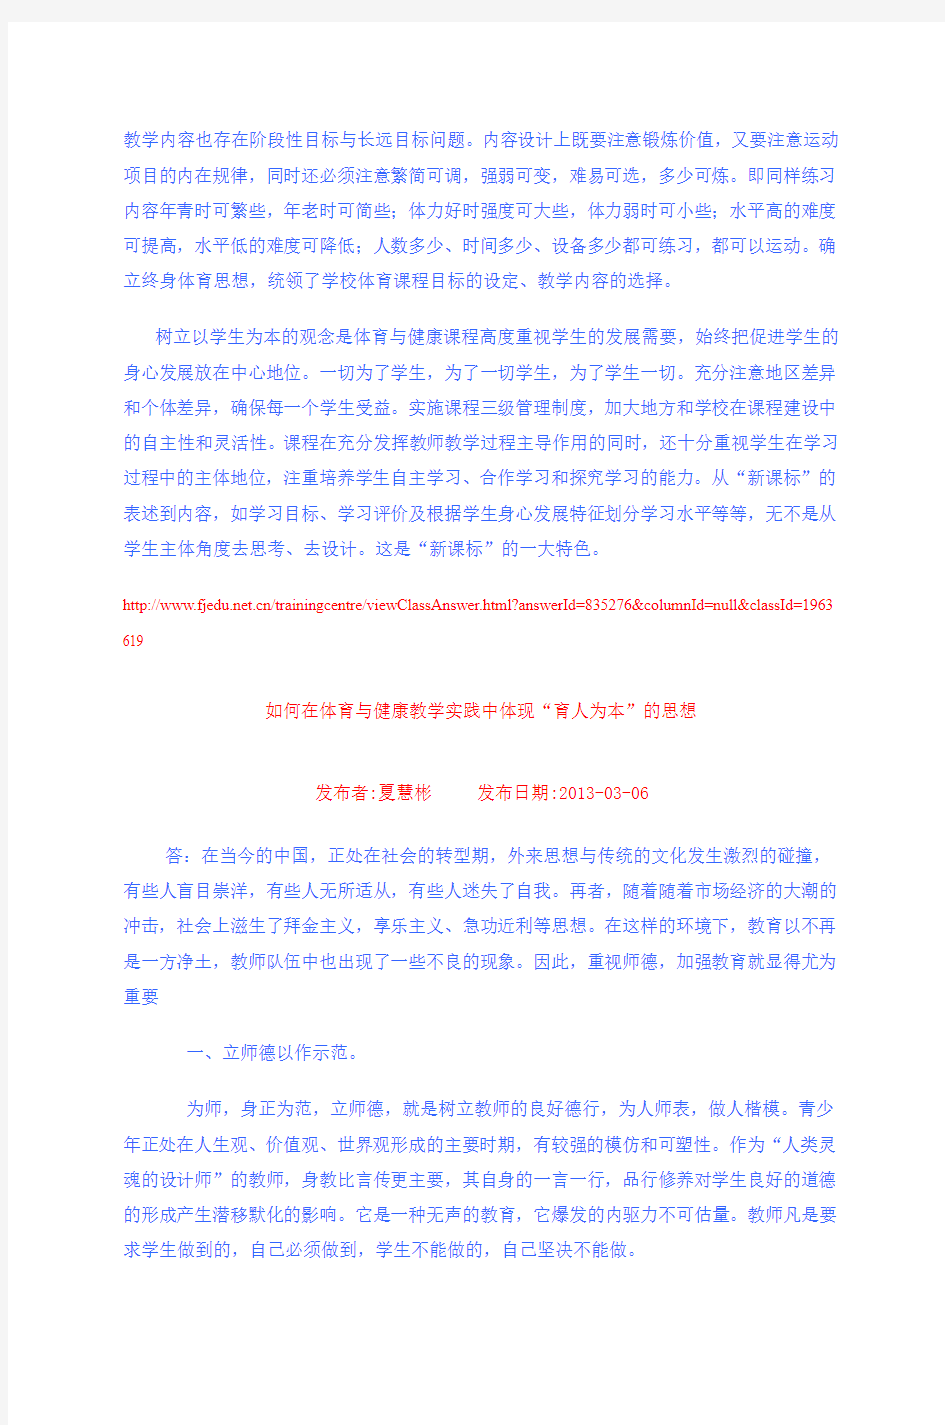 2013福鼎小学体育15班第一期班级简报